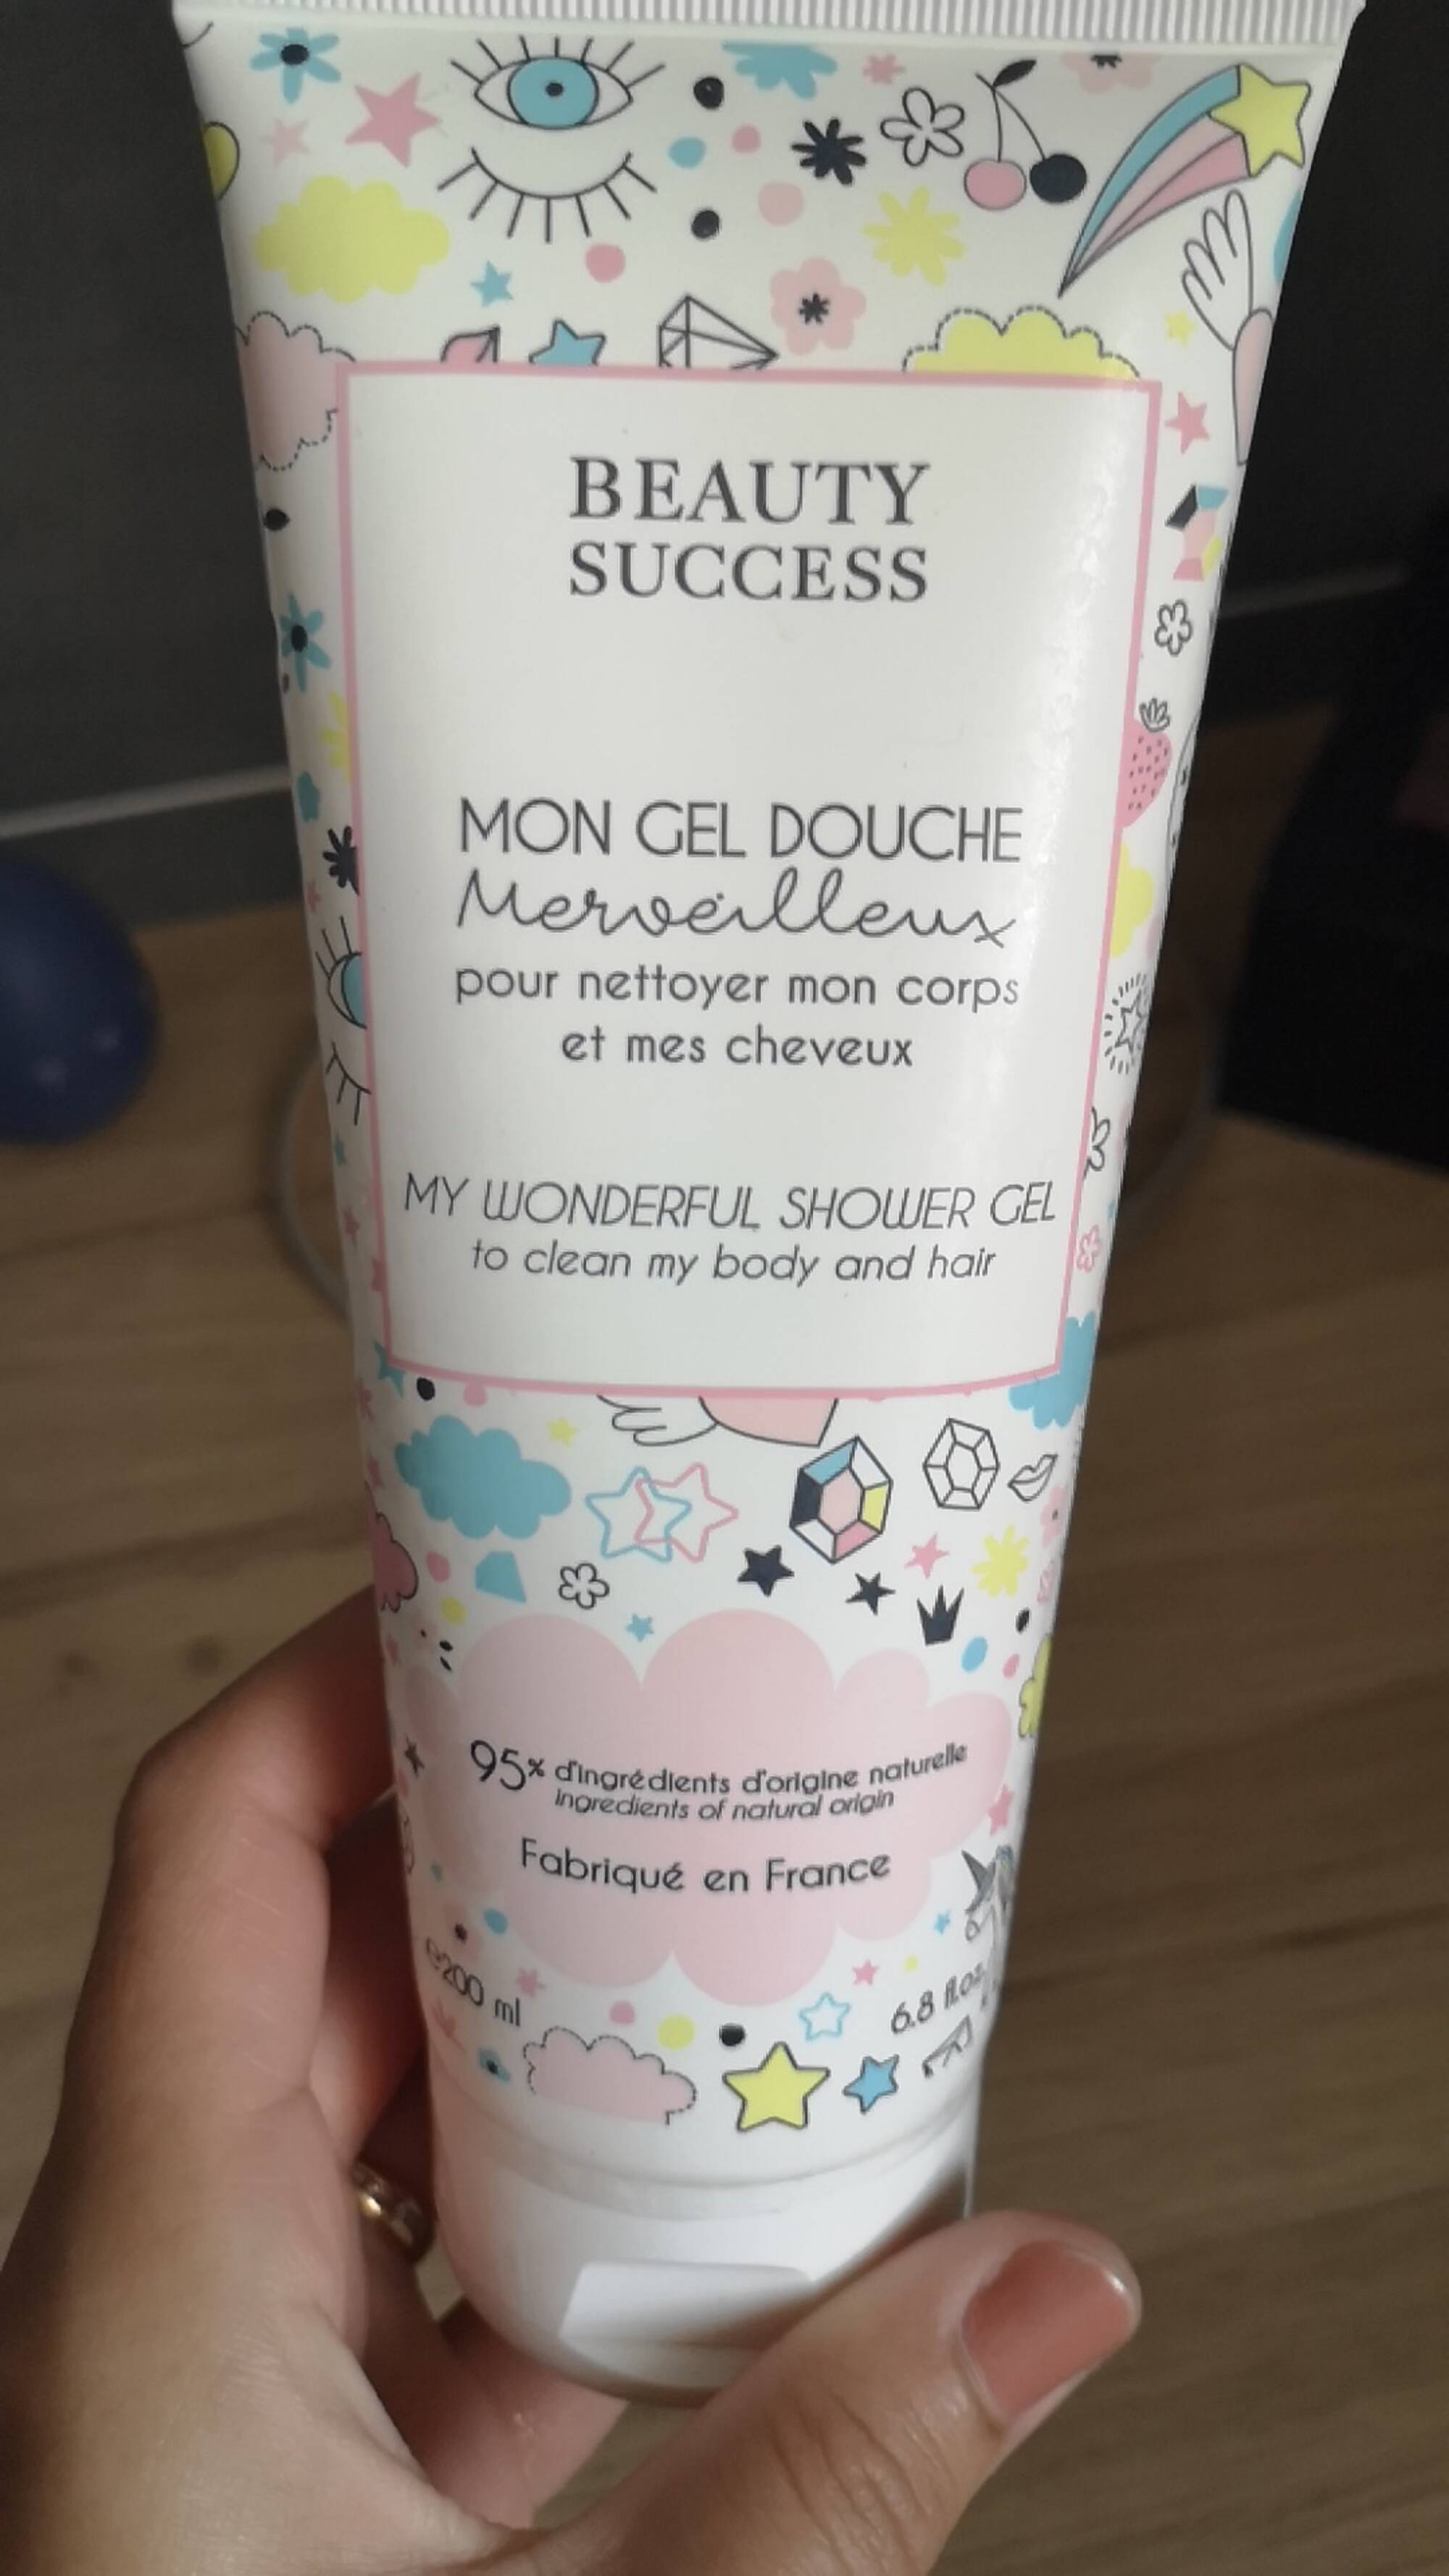 BEAUTY SUCCESS - Mon gel douche merveilleux